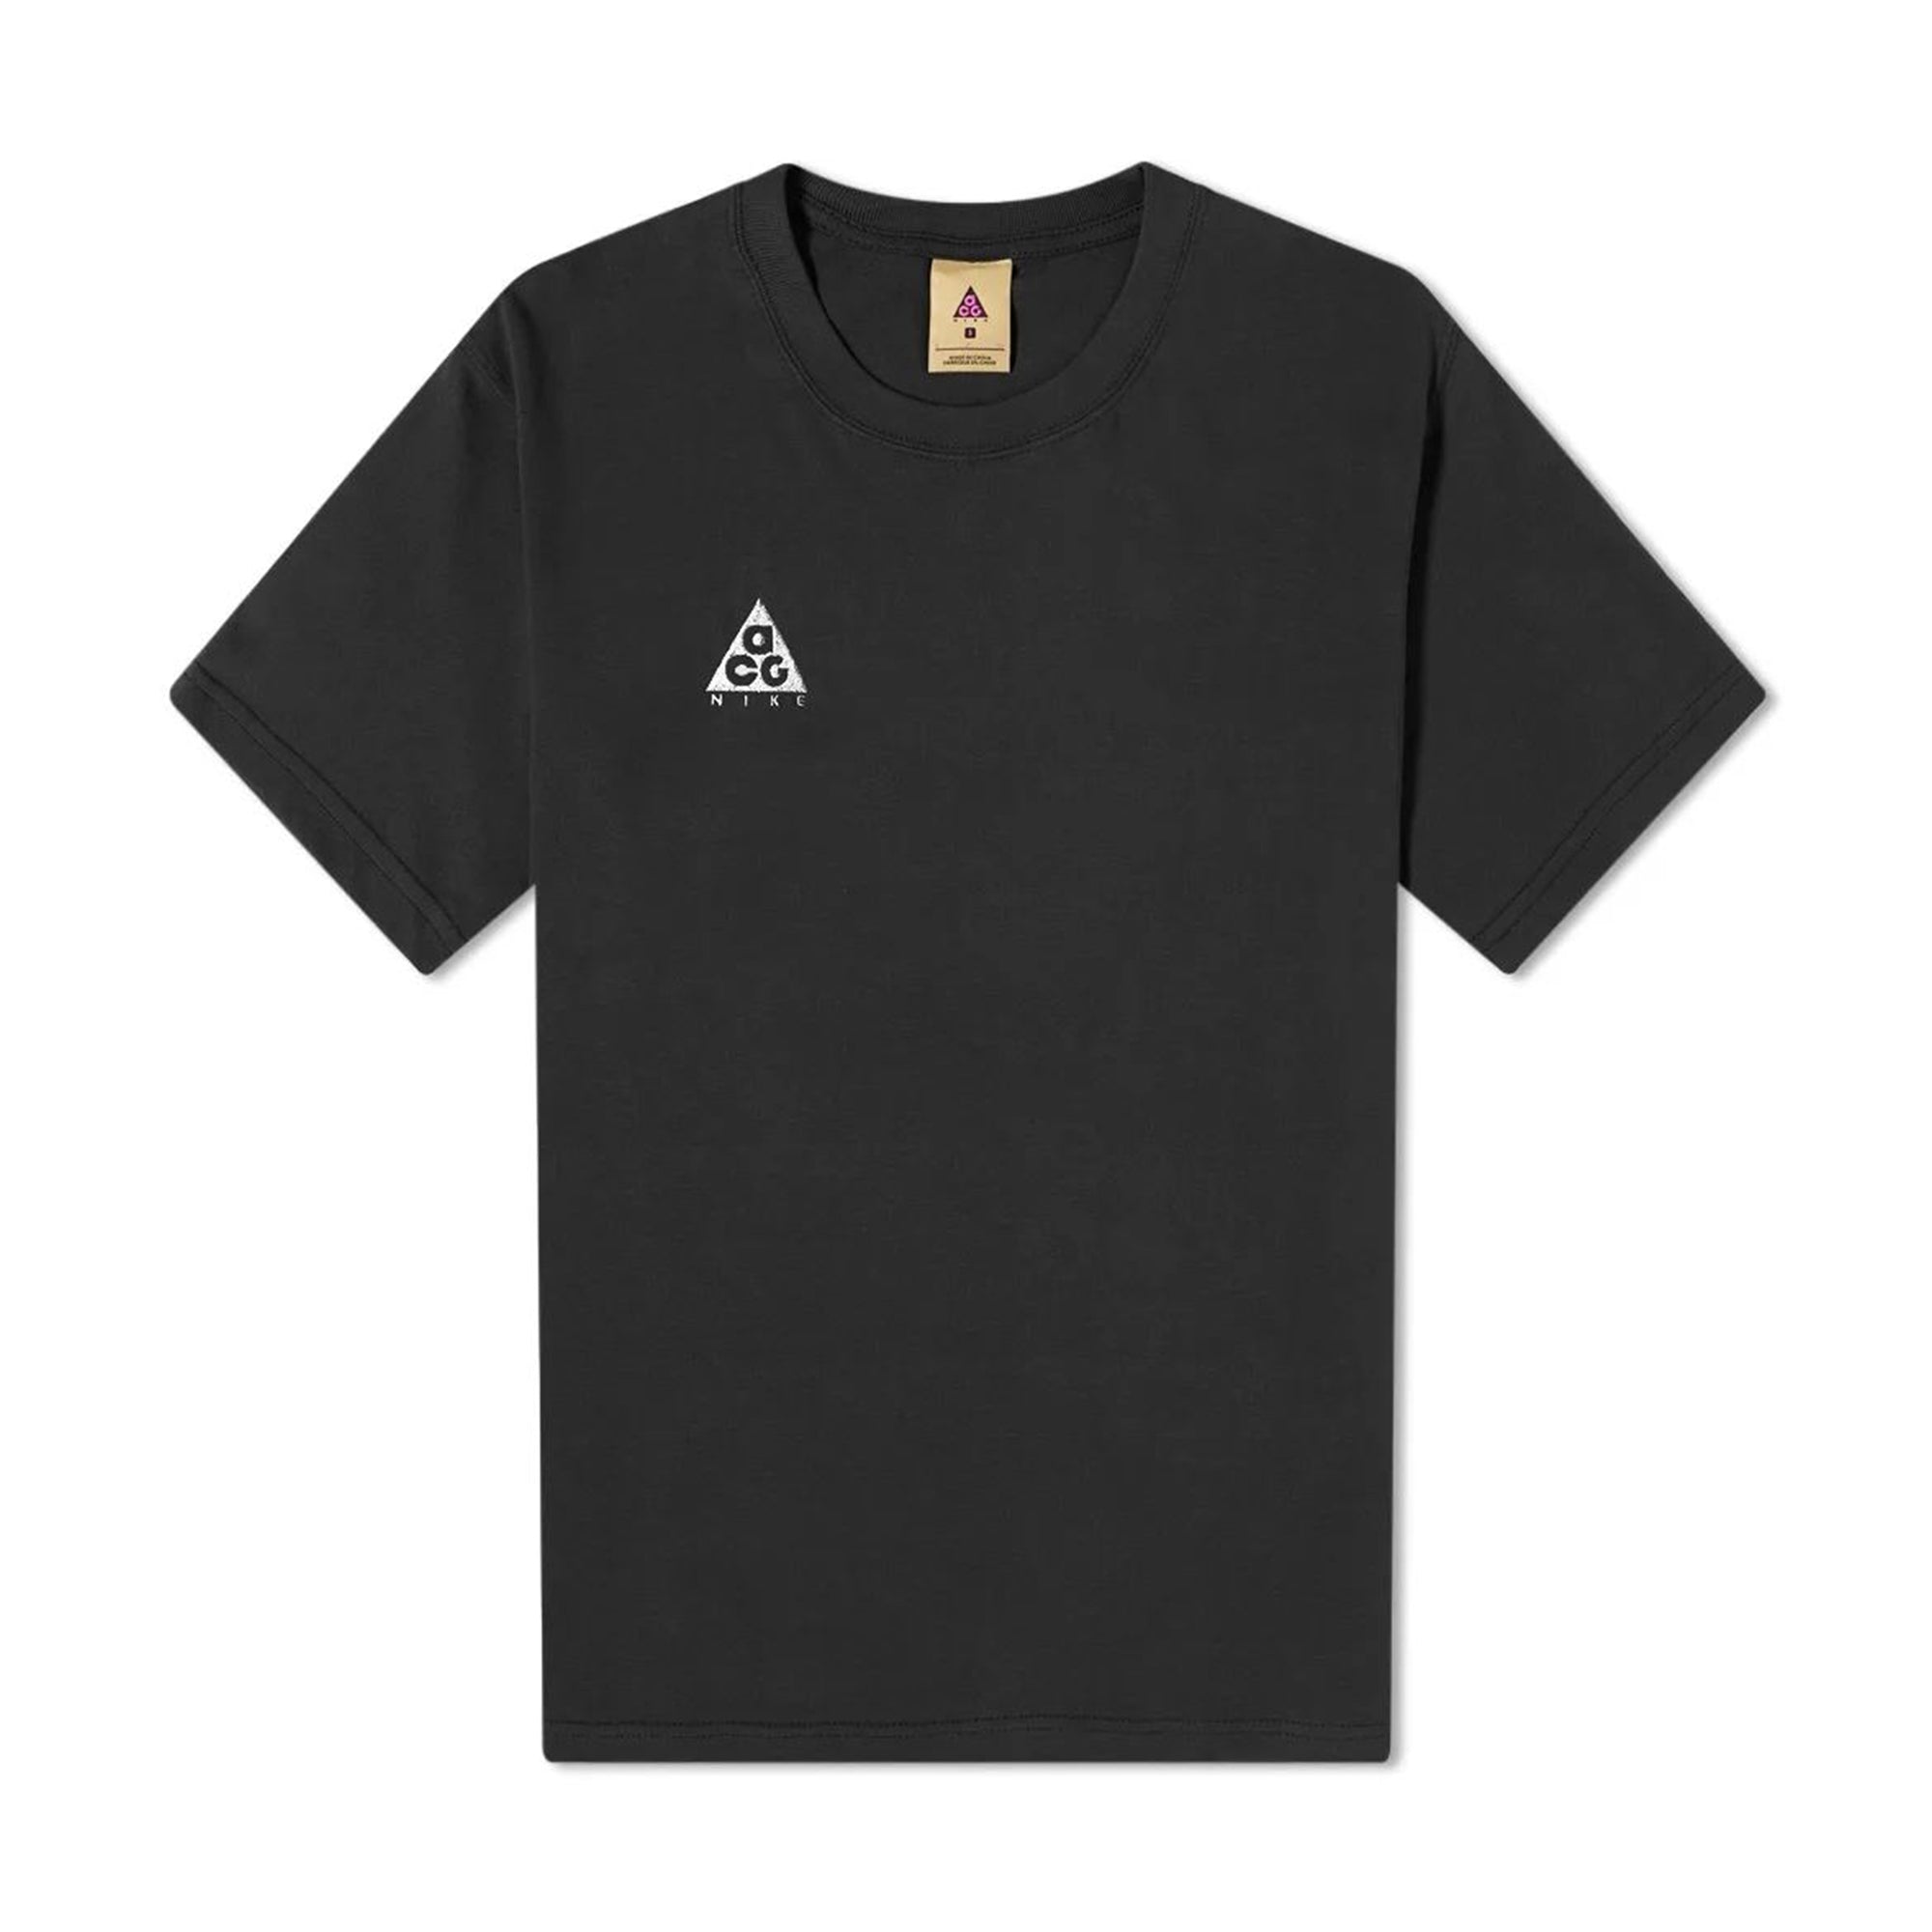 Nike Men's T-Shirt - Black - XXL